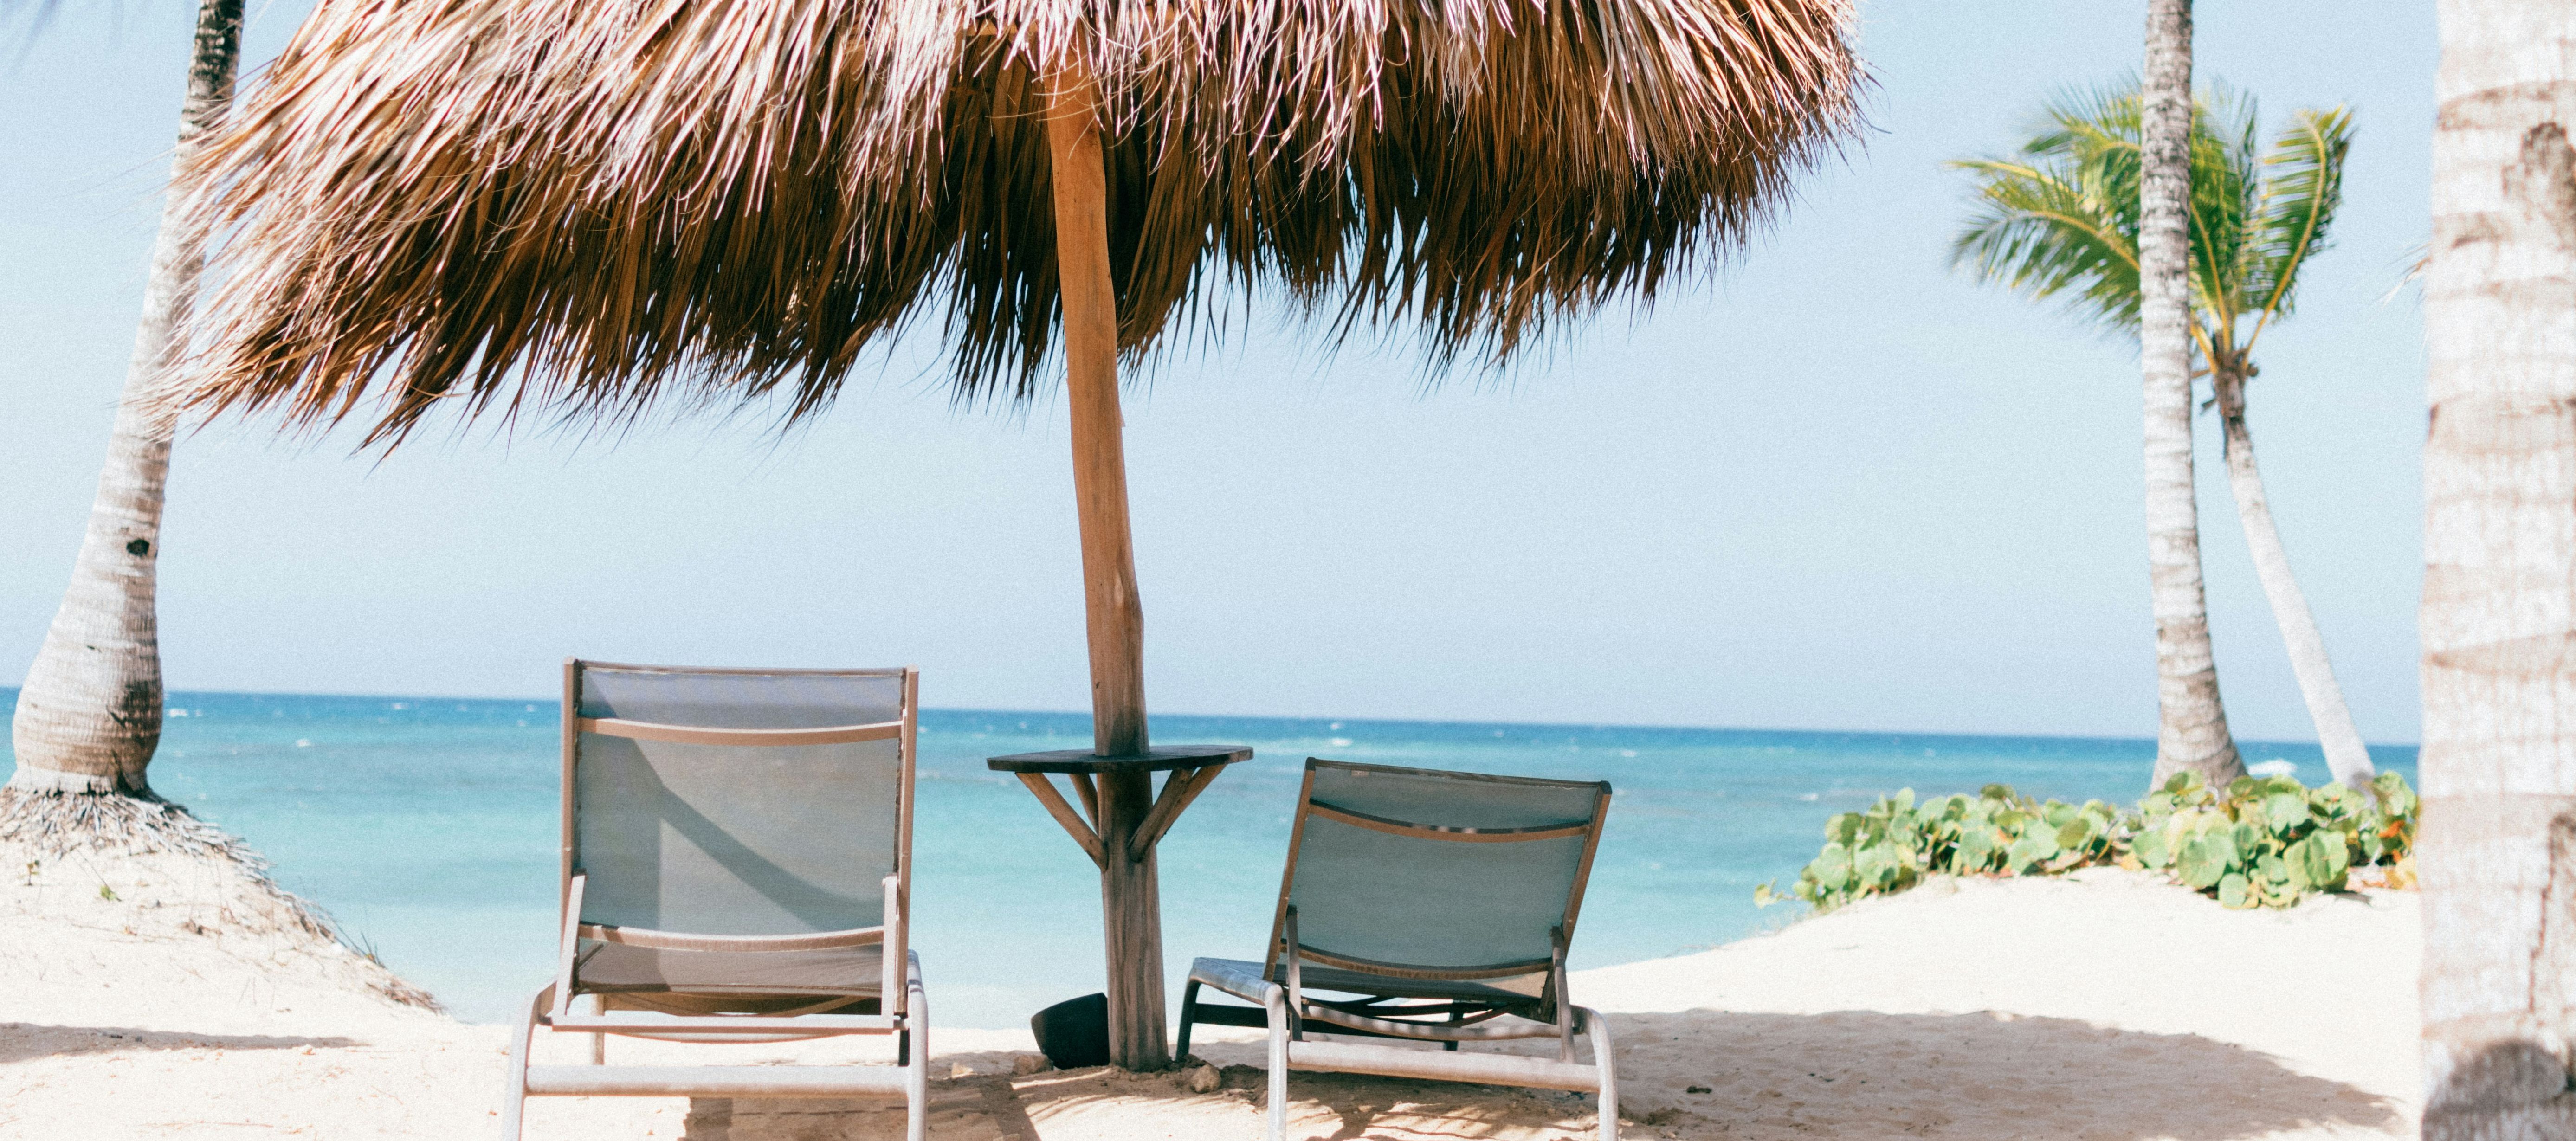 Ein Bild am Strand mit zwei Liegestühlen und einem Sonnenschirm. 